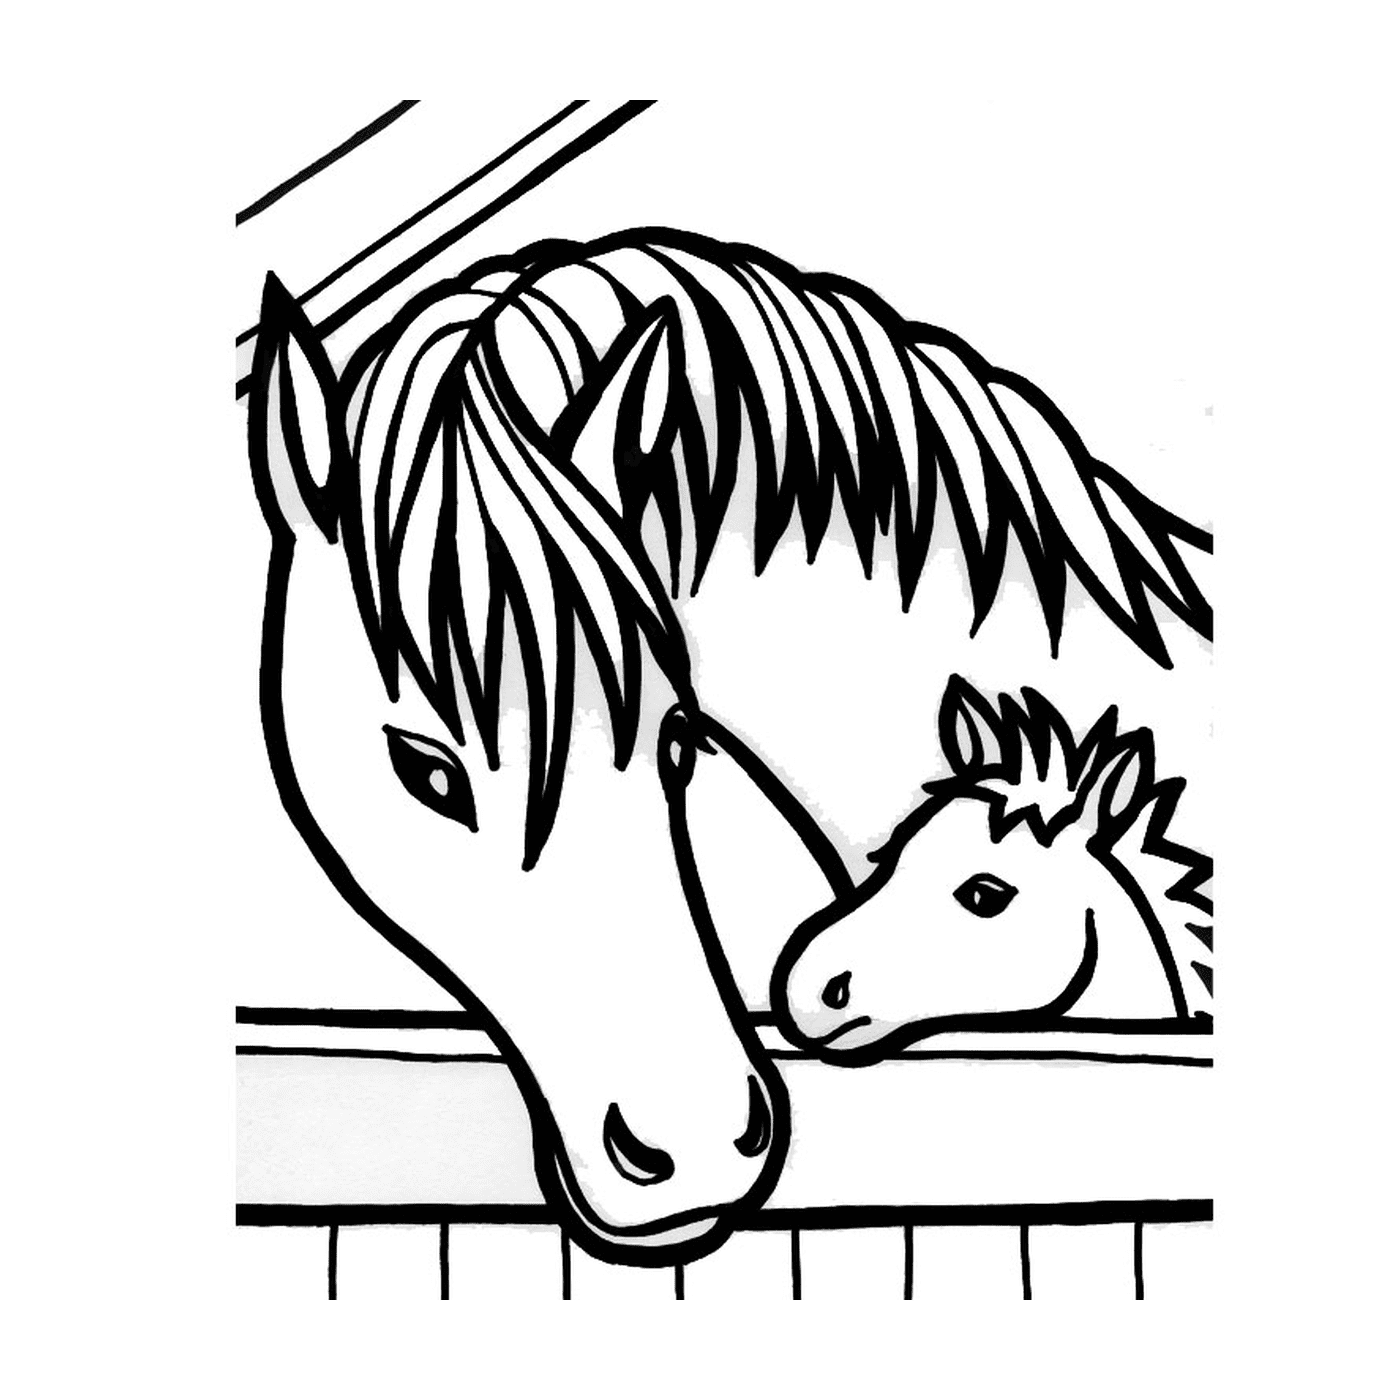  Лошадь и пони присматривают за забором 